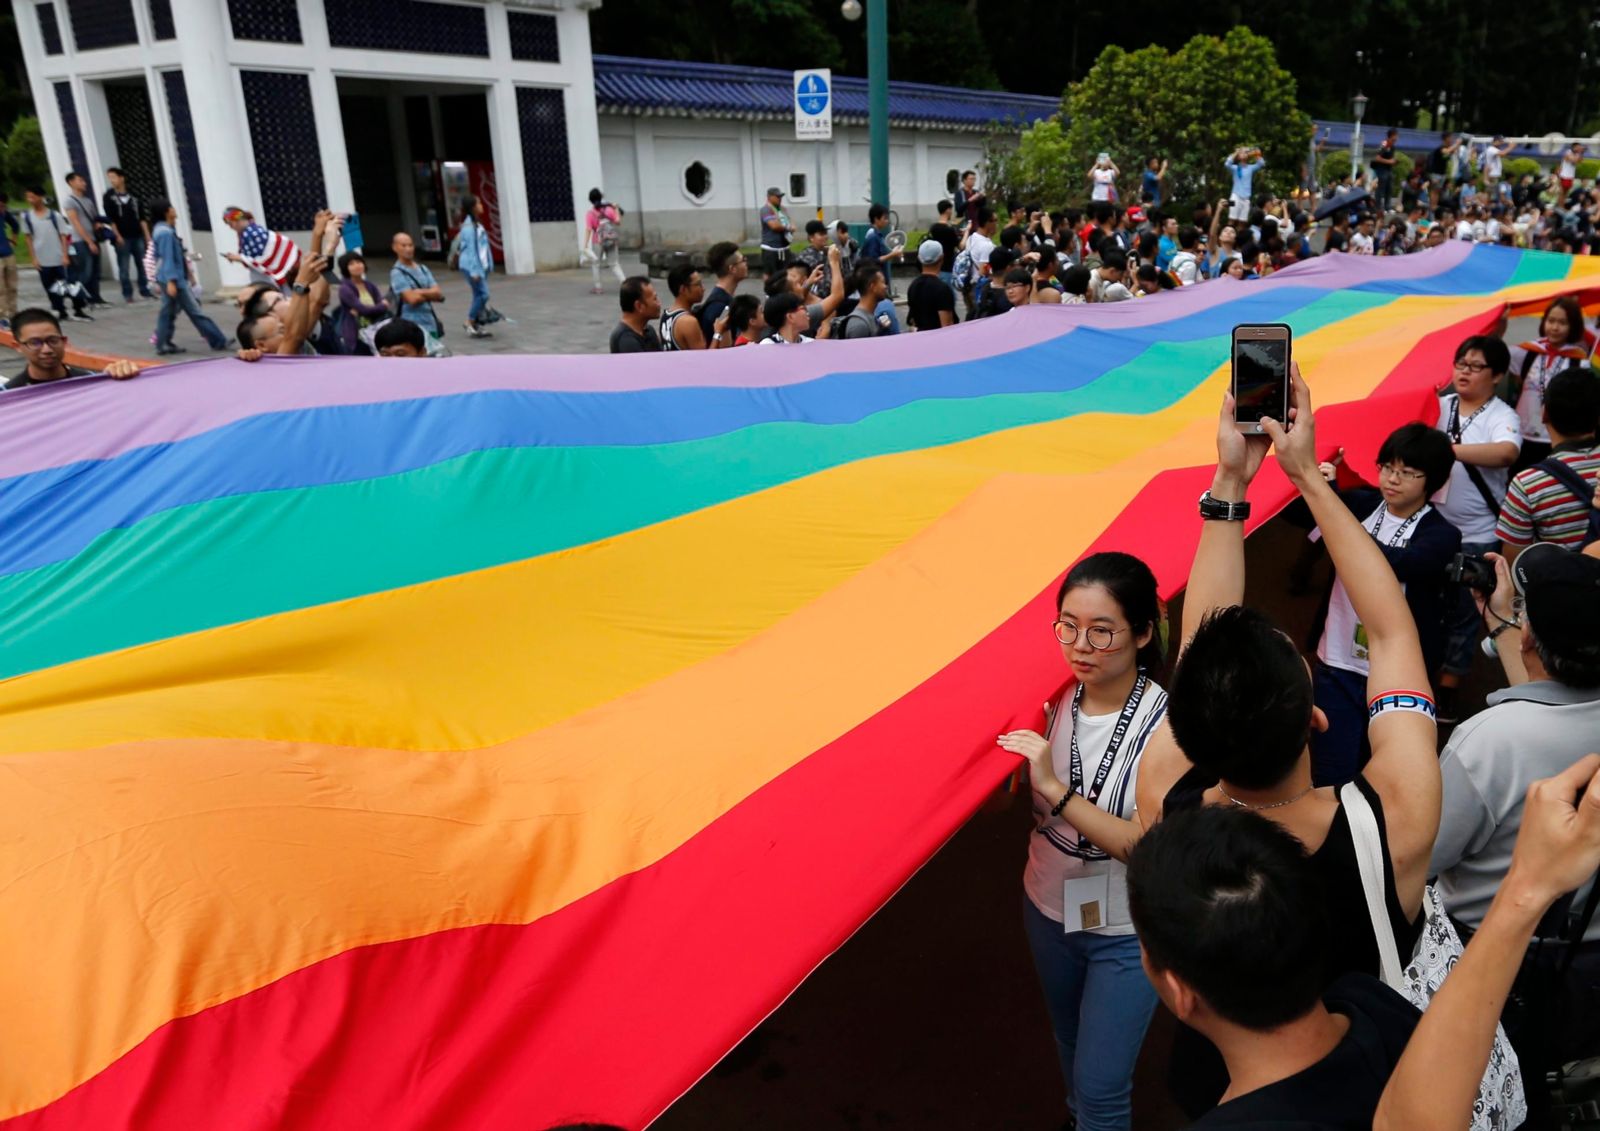 عقاب ماليزيا لشريكتين مثليتين يُسلّط الضوء على رفض منظمة التعاون الإسلامي لحقوق مجتمع الميم